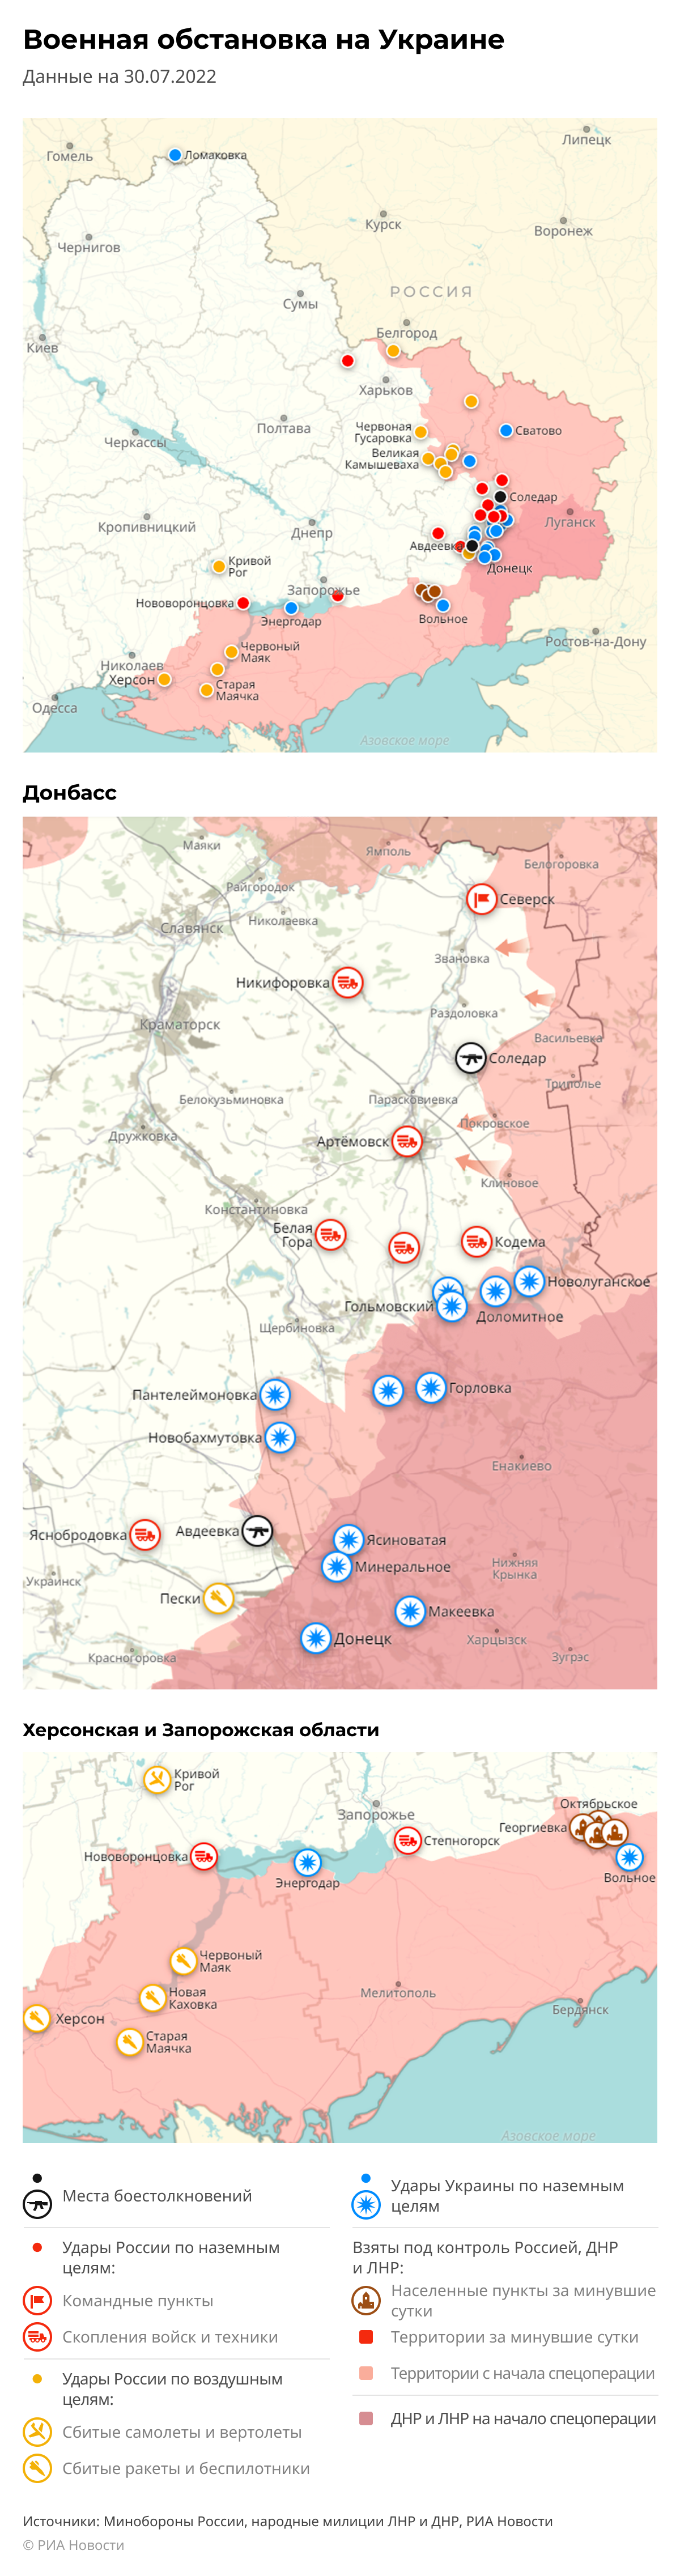 Карта спецоперации Вооруженных сил России на Украине на 30.07.2022